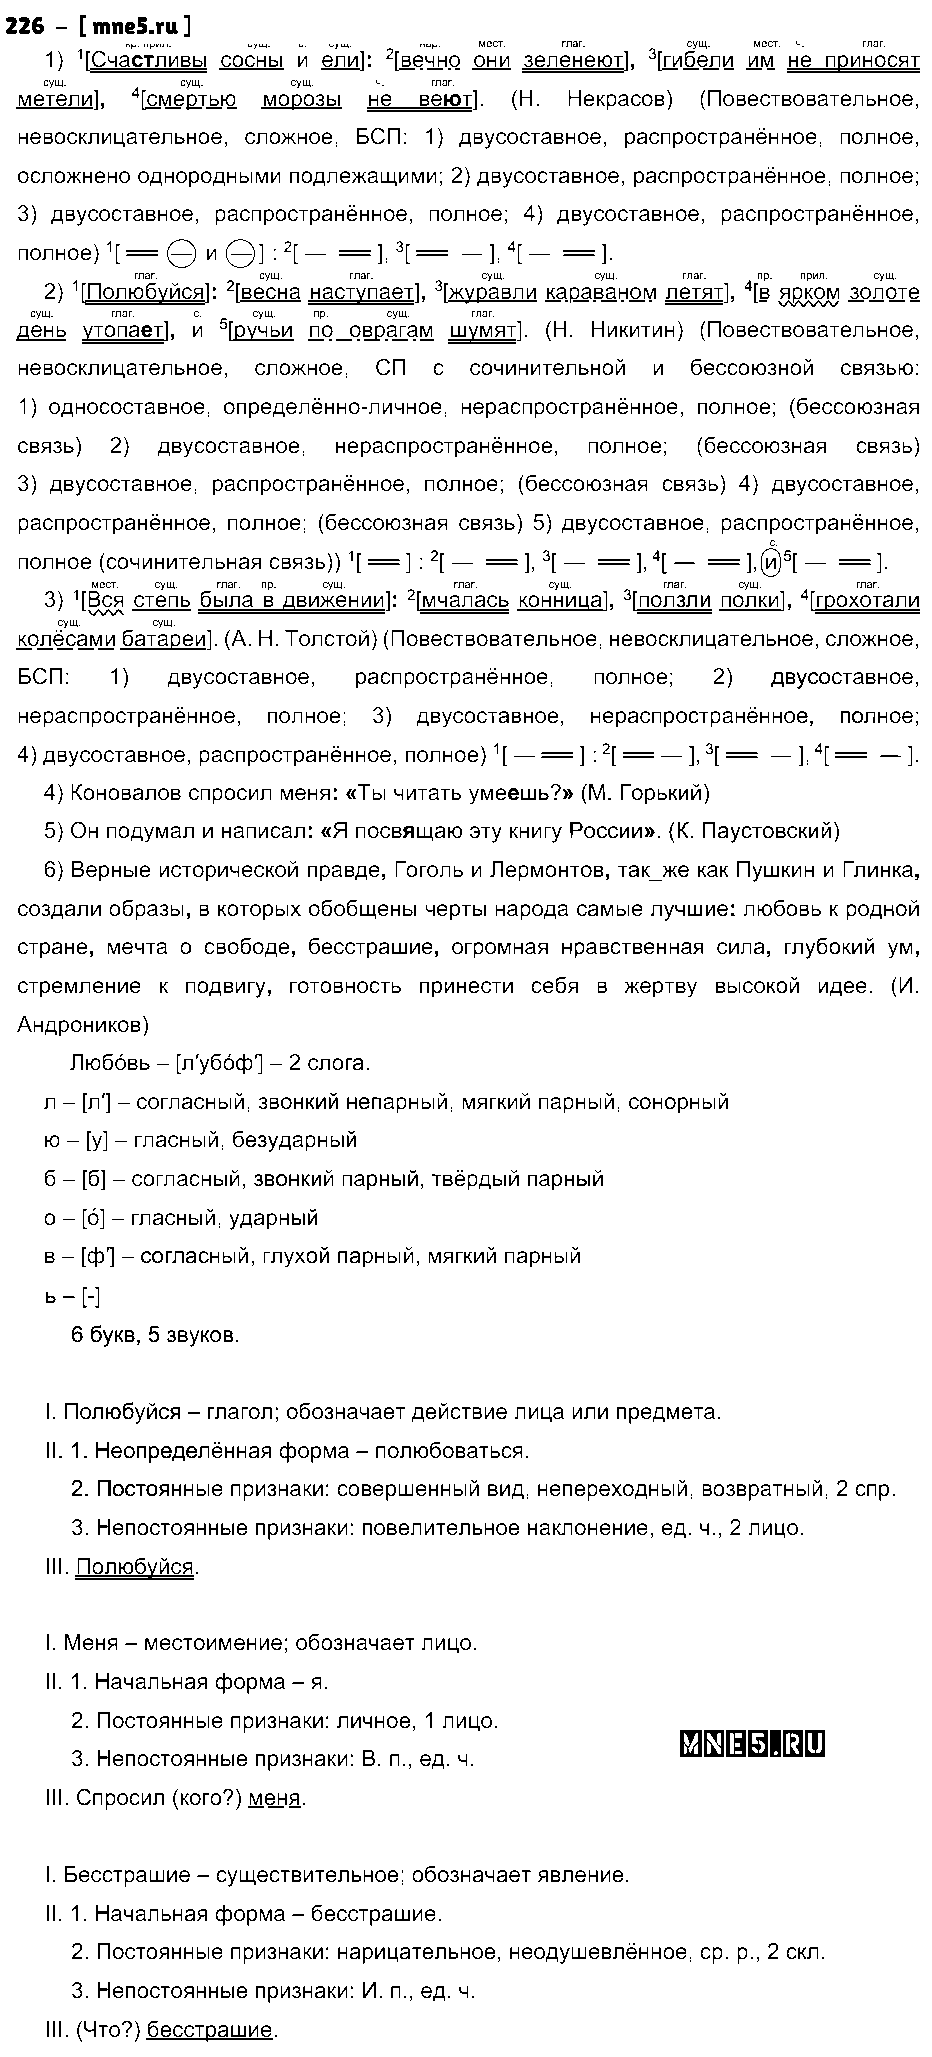 ГДЗ Русский язык 9 класс - 226